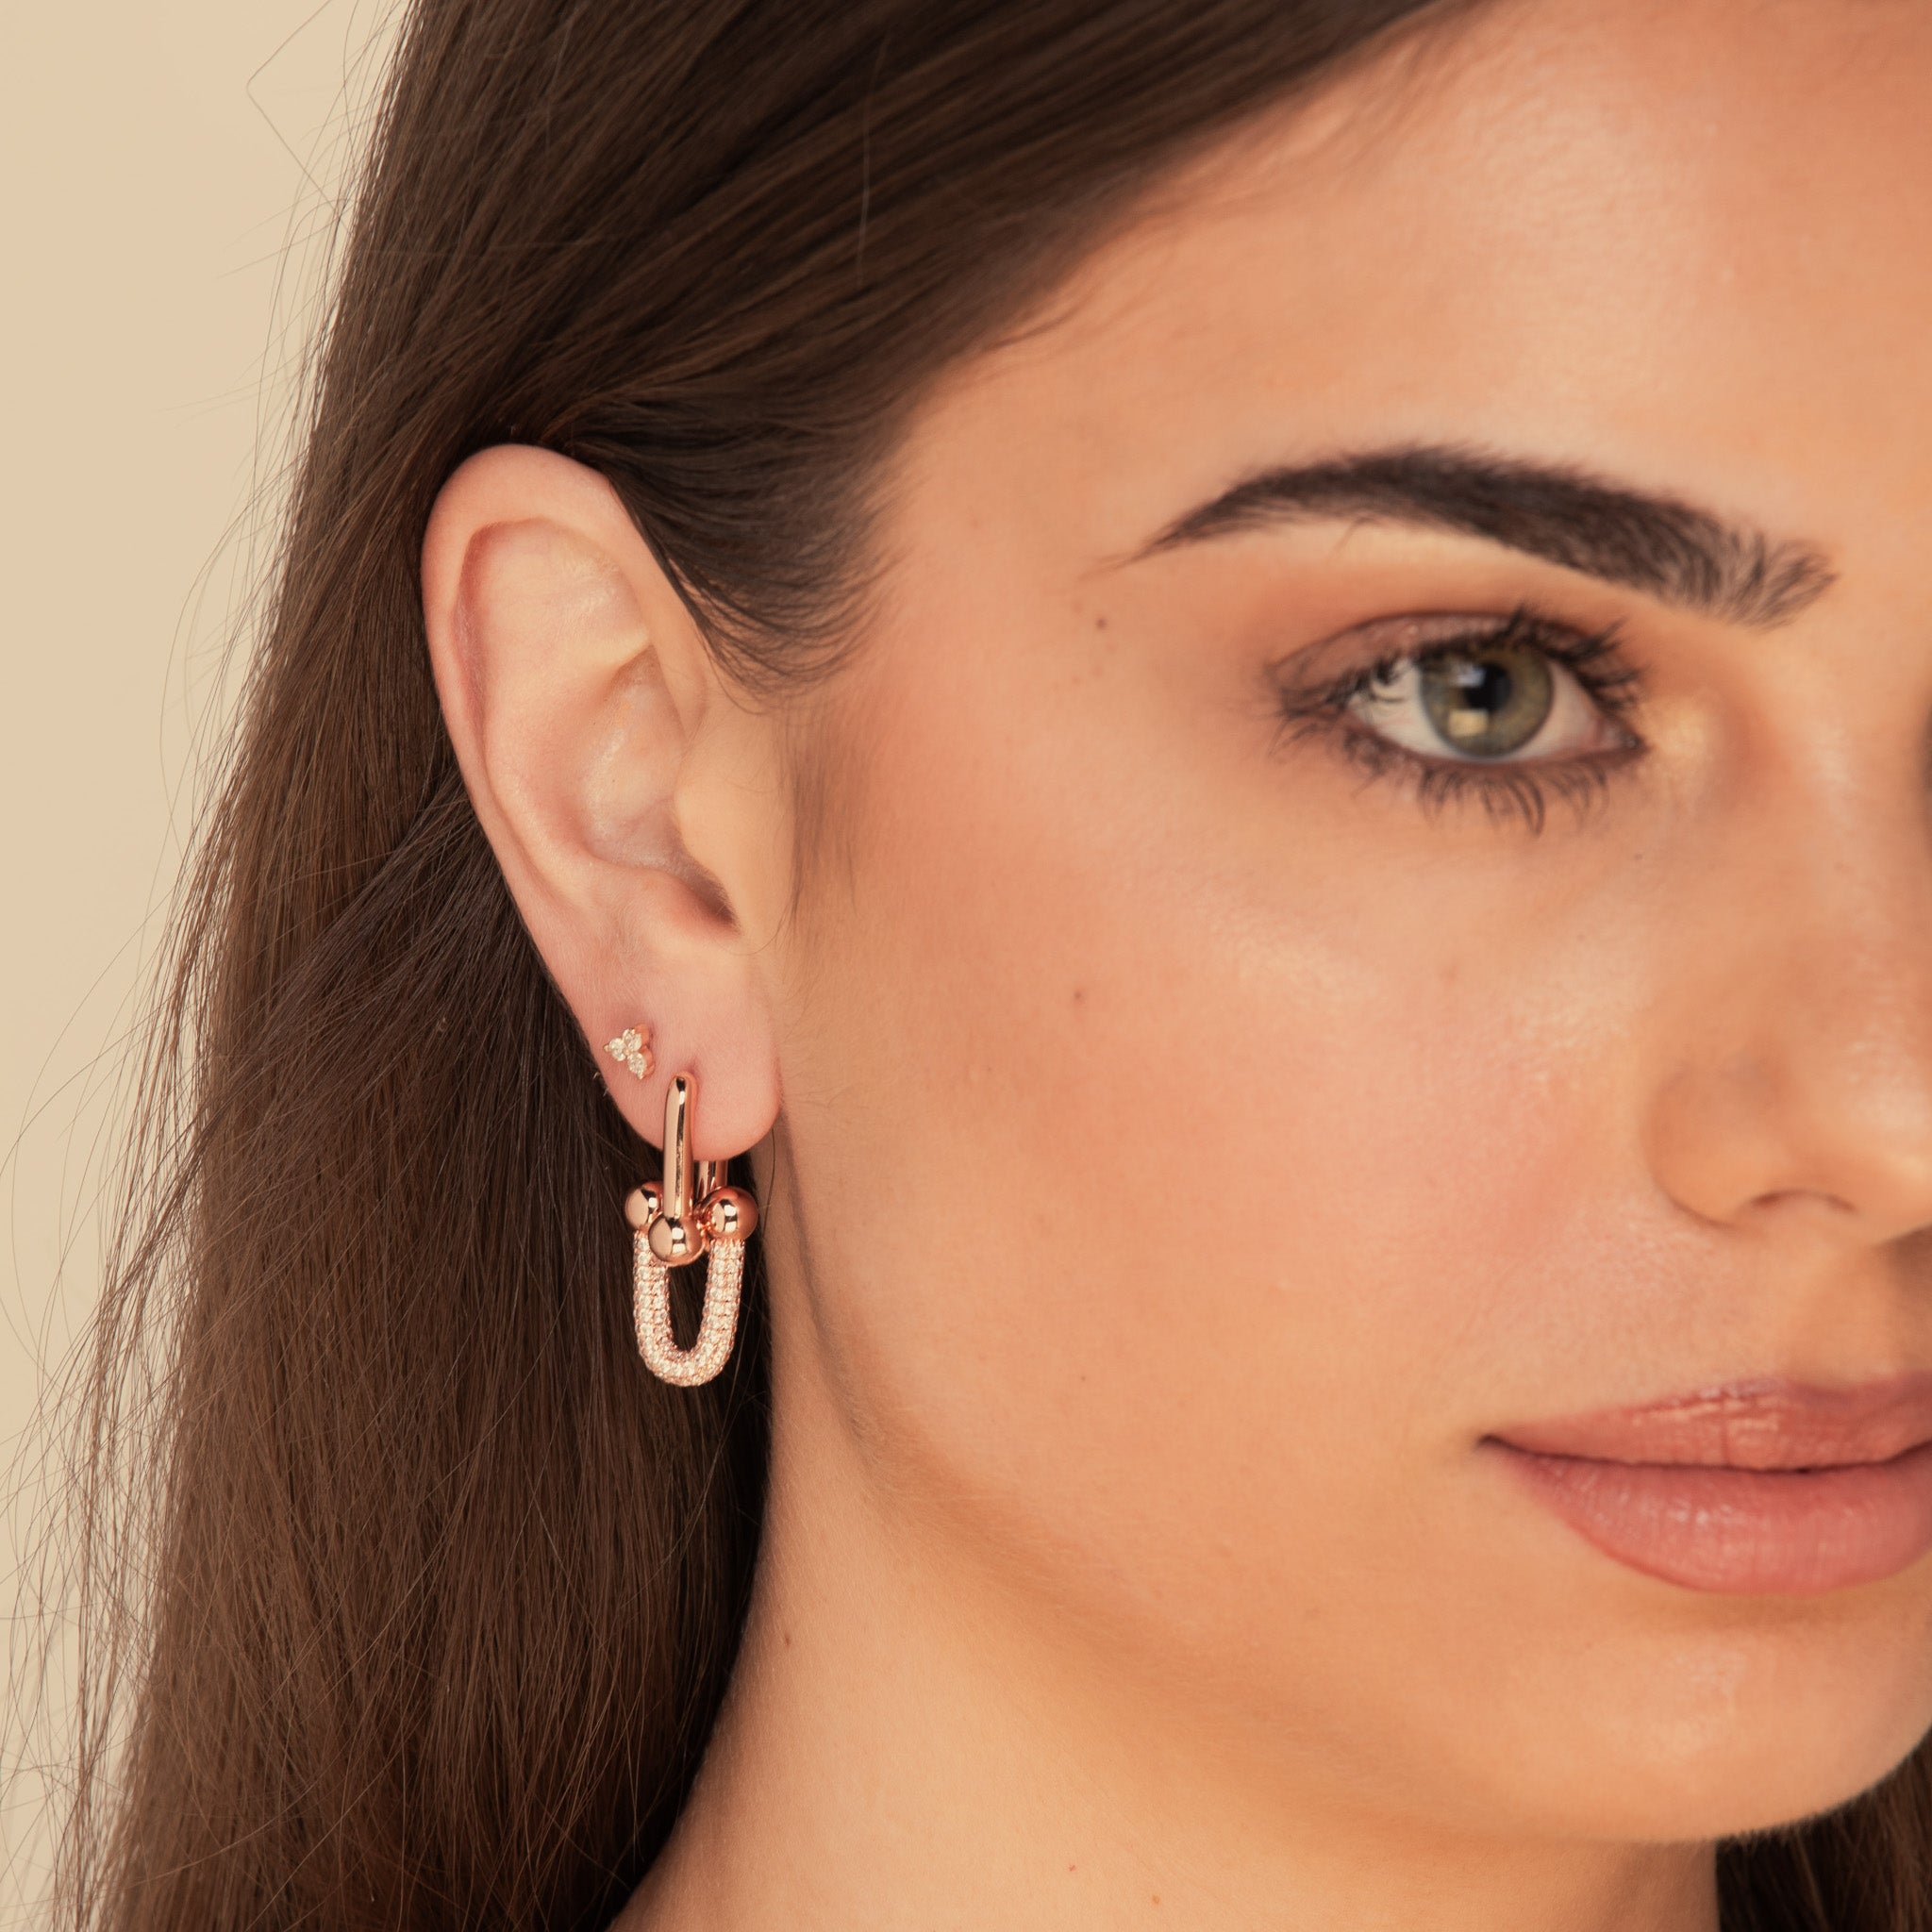 Isabella Pave U Link Earrings